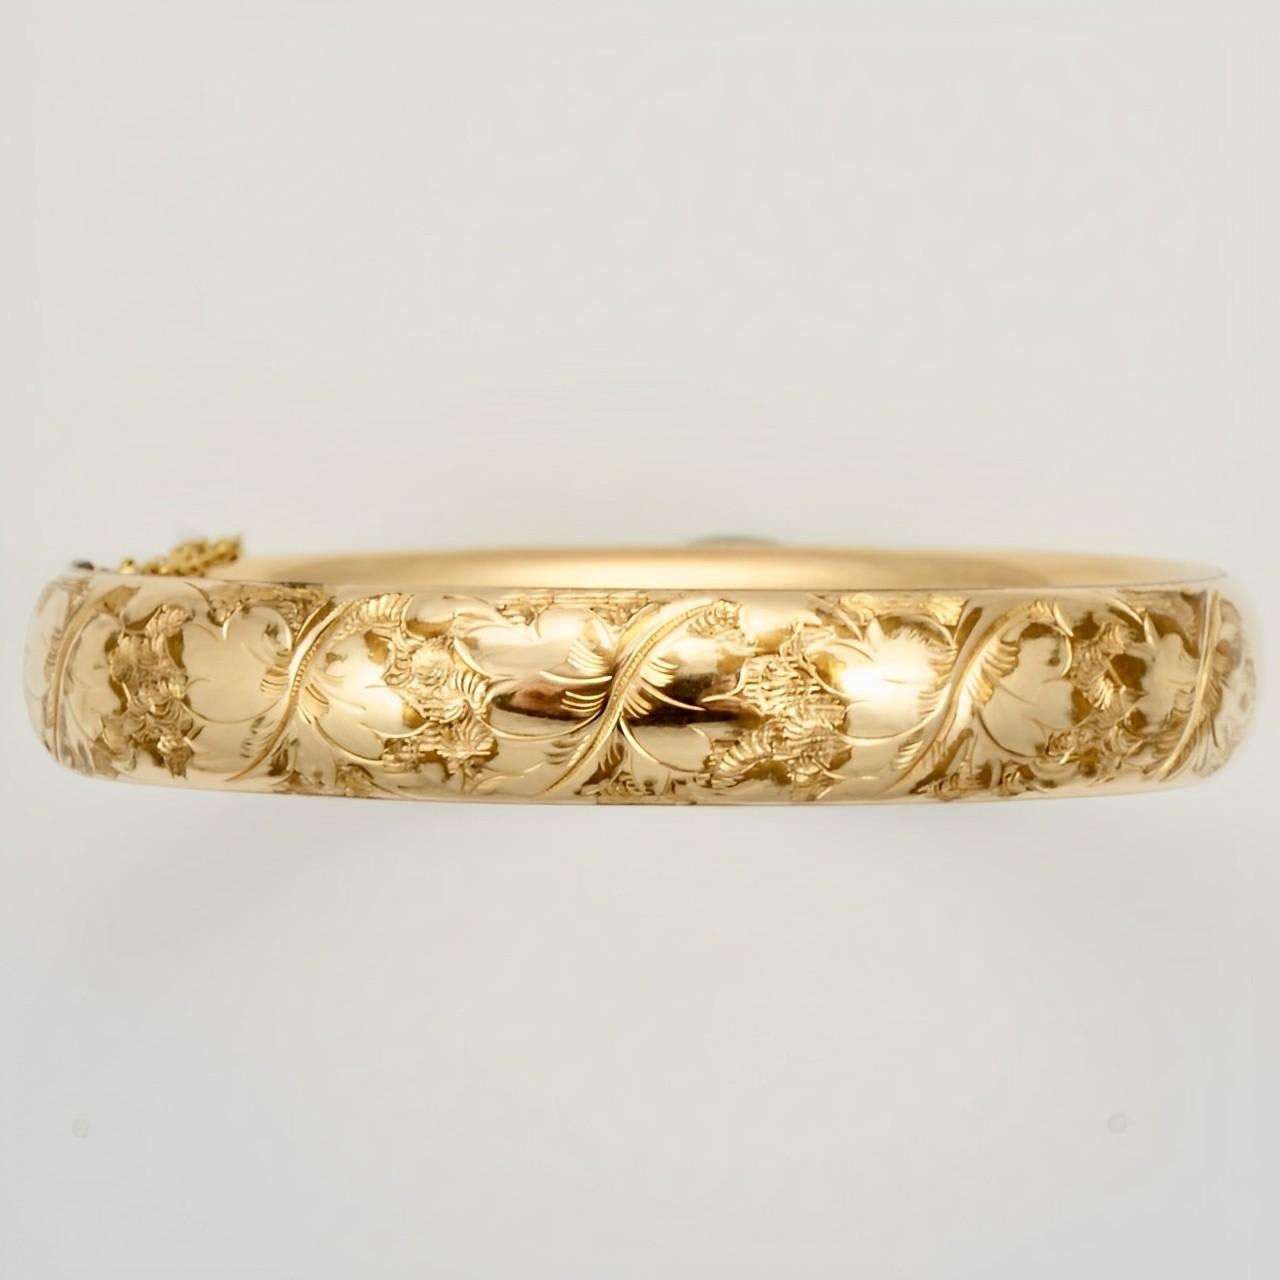 Bates und Bacon wunderbare antike Rose Gold gefüllt eingraviert Armreif Armband.  Sie wird mit einem Druckknopf geöffnet. Der Armreif ist leicht oval, die Innenmaße sind 6 cm mal 5,5 cm und die Breite beträgt 1,1 cm. Das Armband hat Kratzer wie